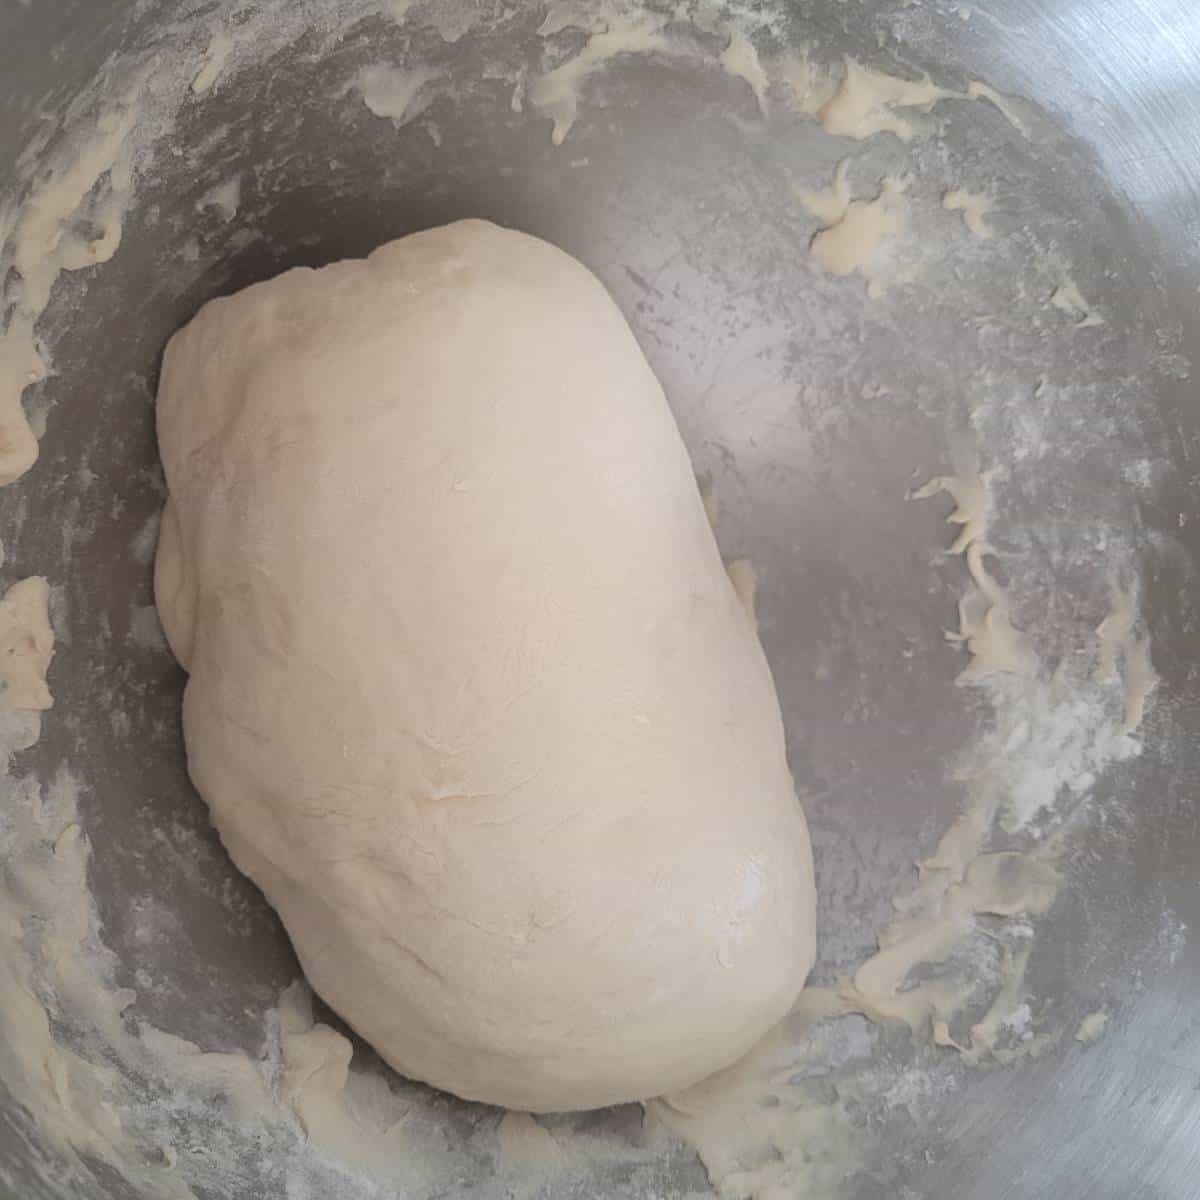 Une pâte douce, élastique et non collante pour faire un pain blanc sans sel.